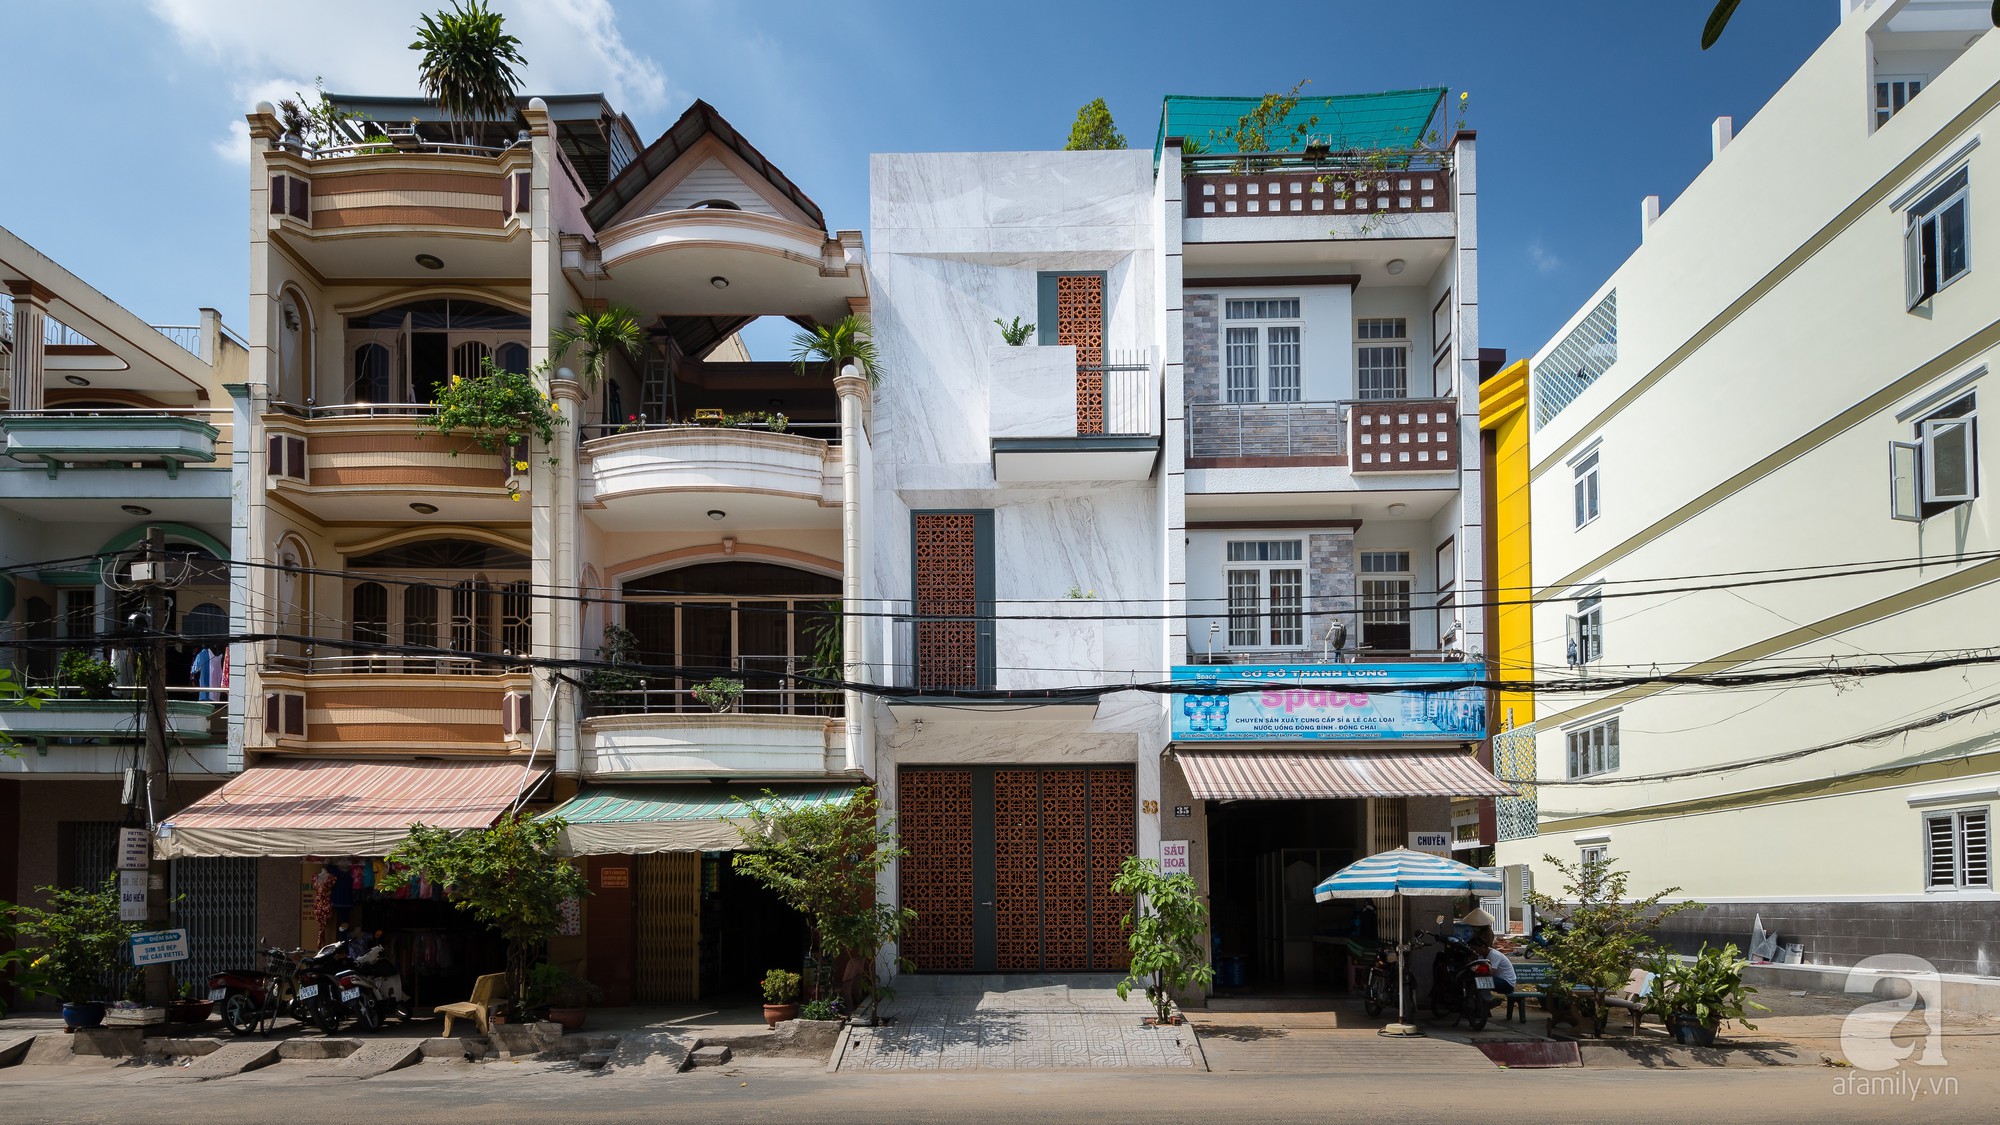 Nhà phố Sài Gòn ngập tràn bóng nắng nhờ khéo thiết kế gạch hóa gió ...